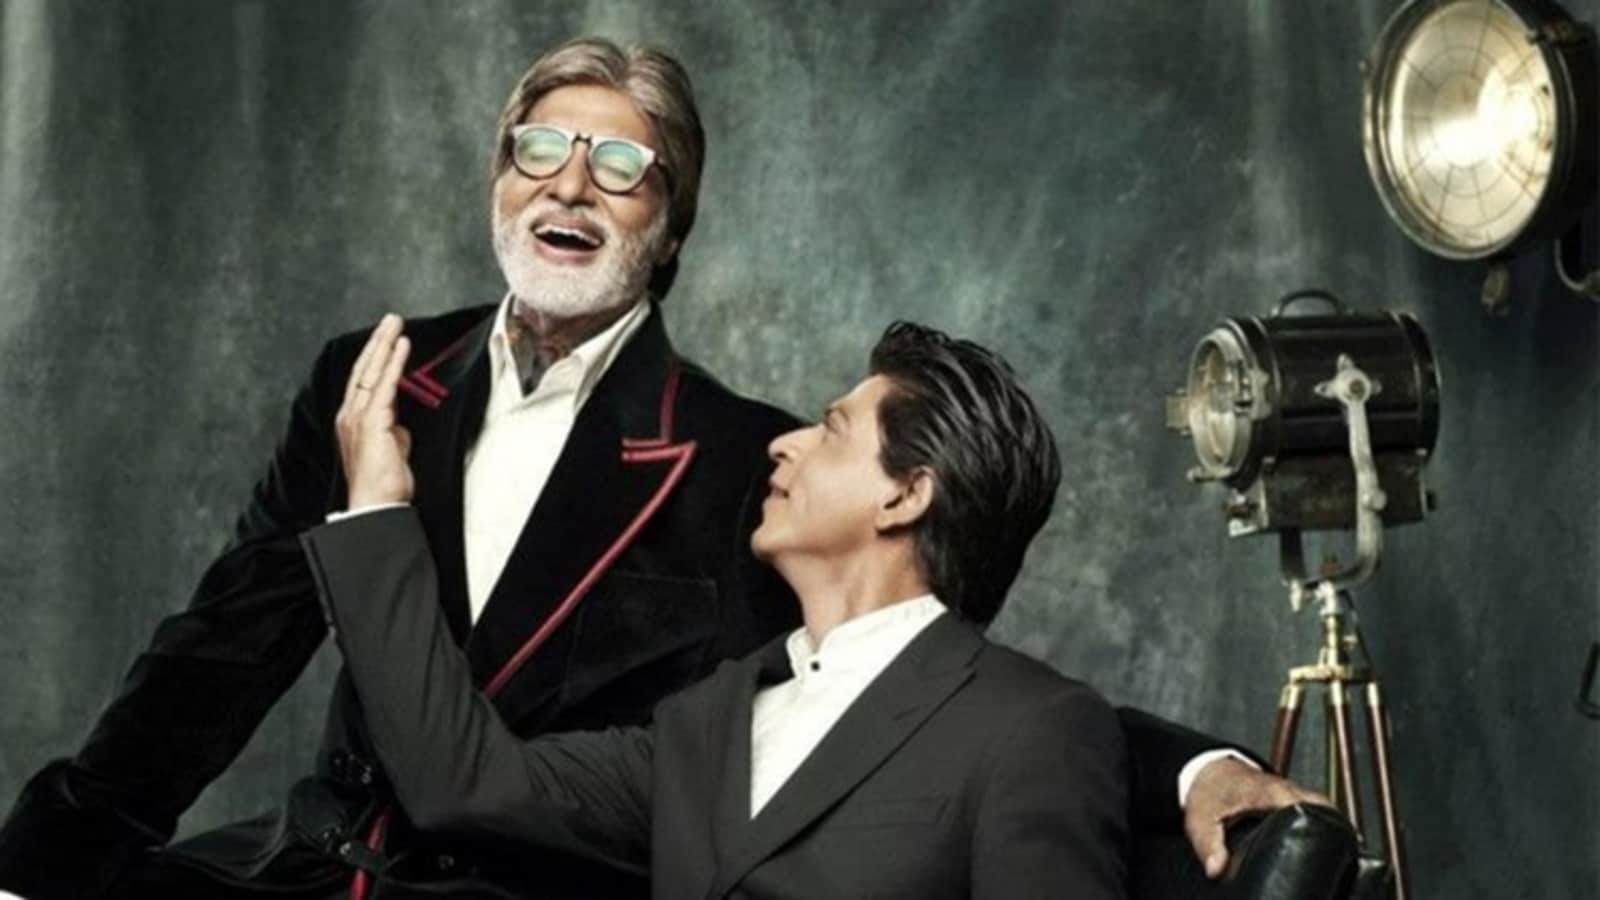 अमिताभ बच्चन और शाहरुख़ खान की एक साथ बिग स्क्रीन पर वापसी 17 साल बाद दिखेगी सुपरस्टार्स की जोड़ी